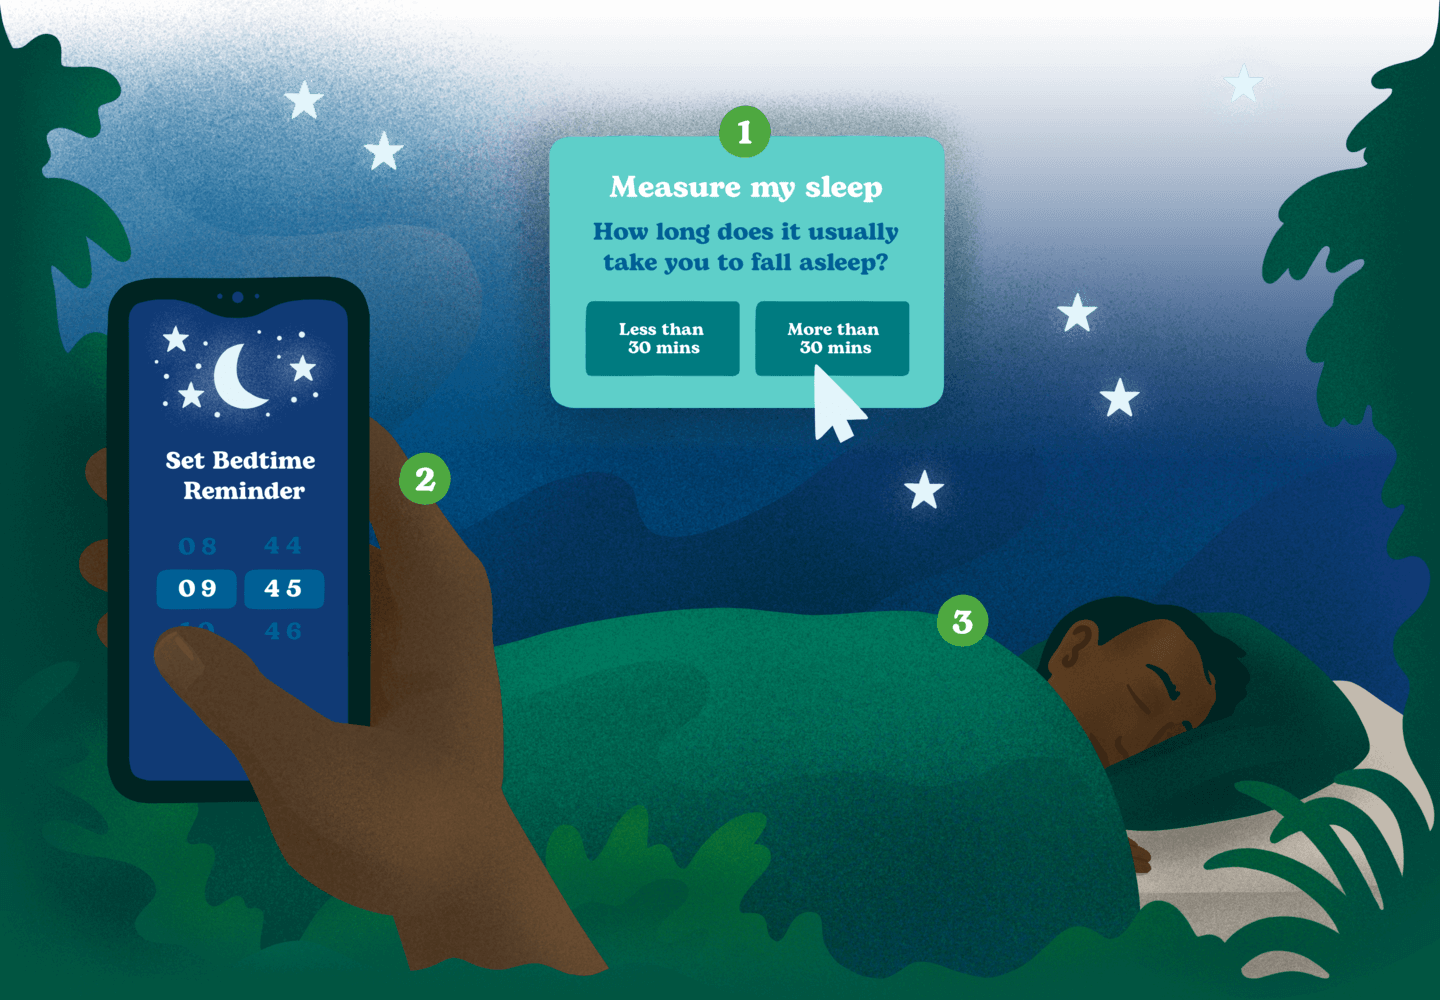 How to achieve improving sleep